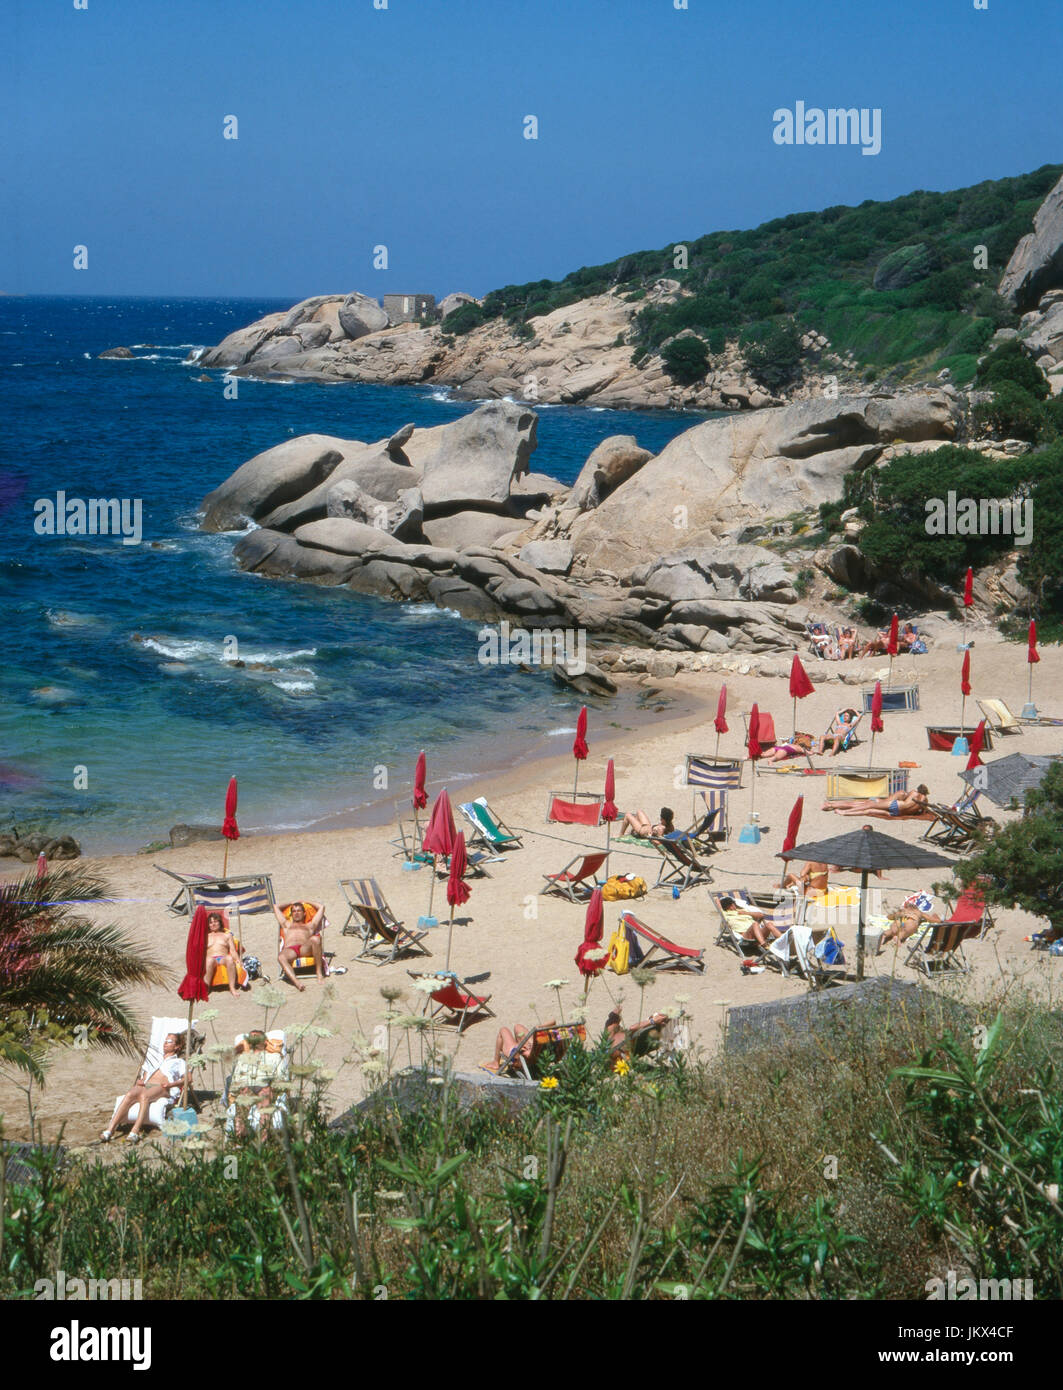 Badestrand in Sizilien in Italien, 1980er. Beach in Sicily in Italy, 1980s. Stock Photo